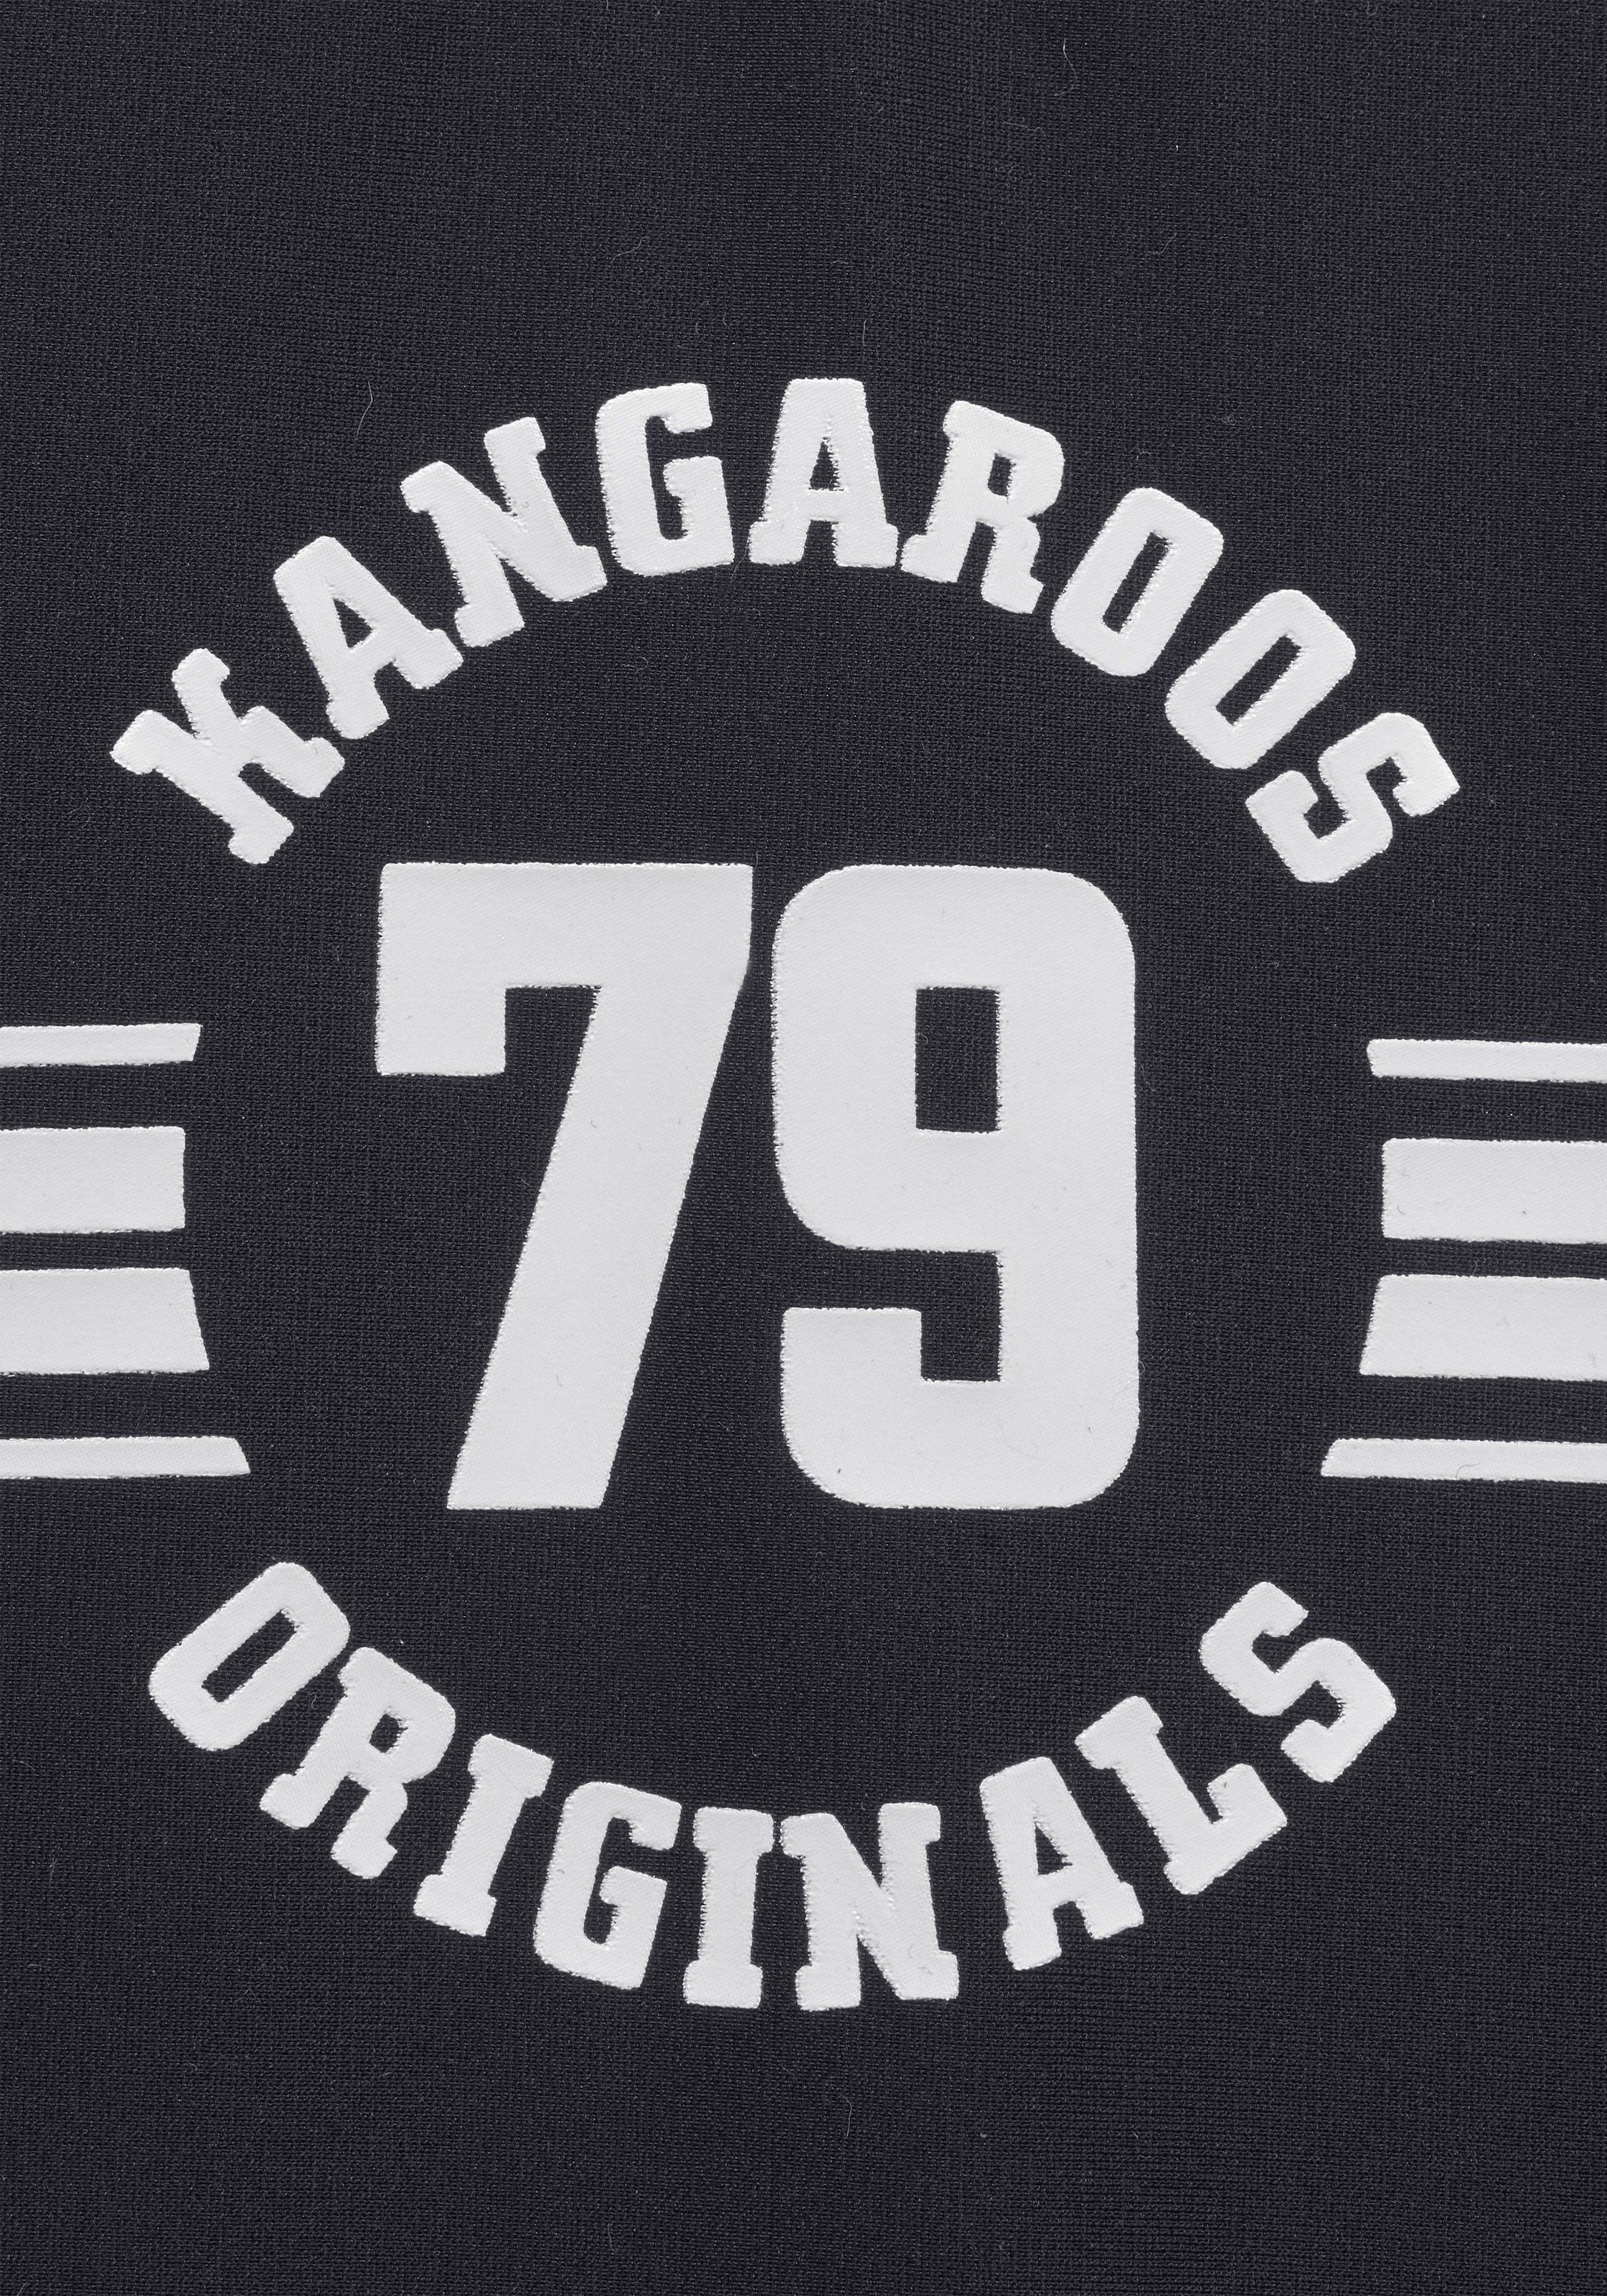 KangaROOS Badeanzug »Sporty«, mit sportlichem Frontdruck günstig kaufen